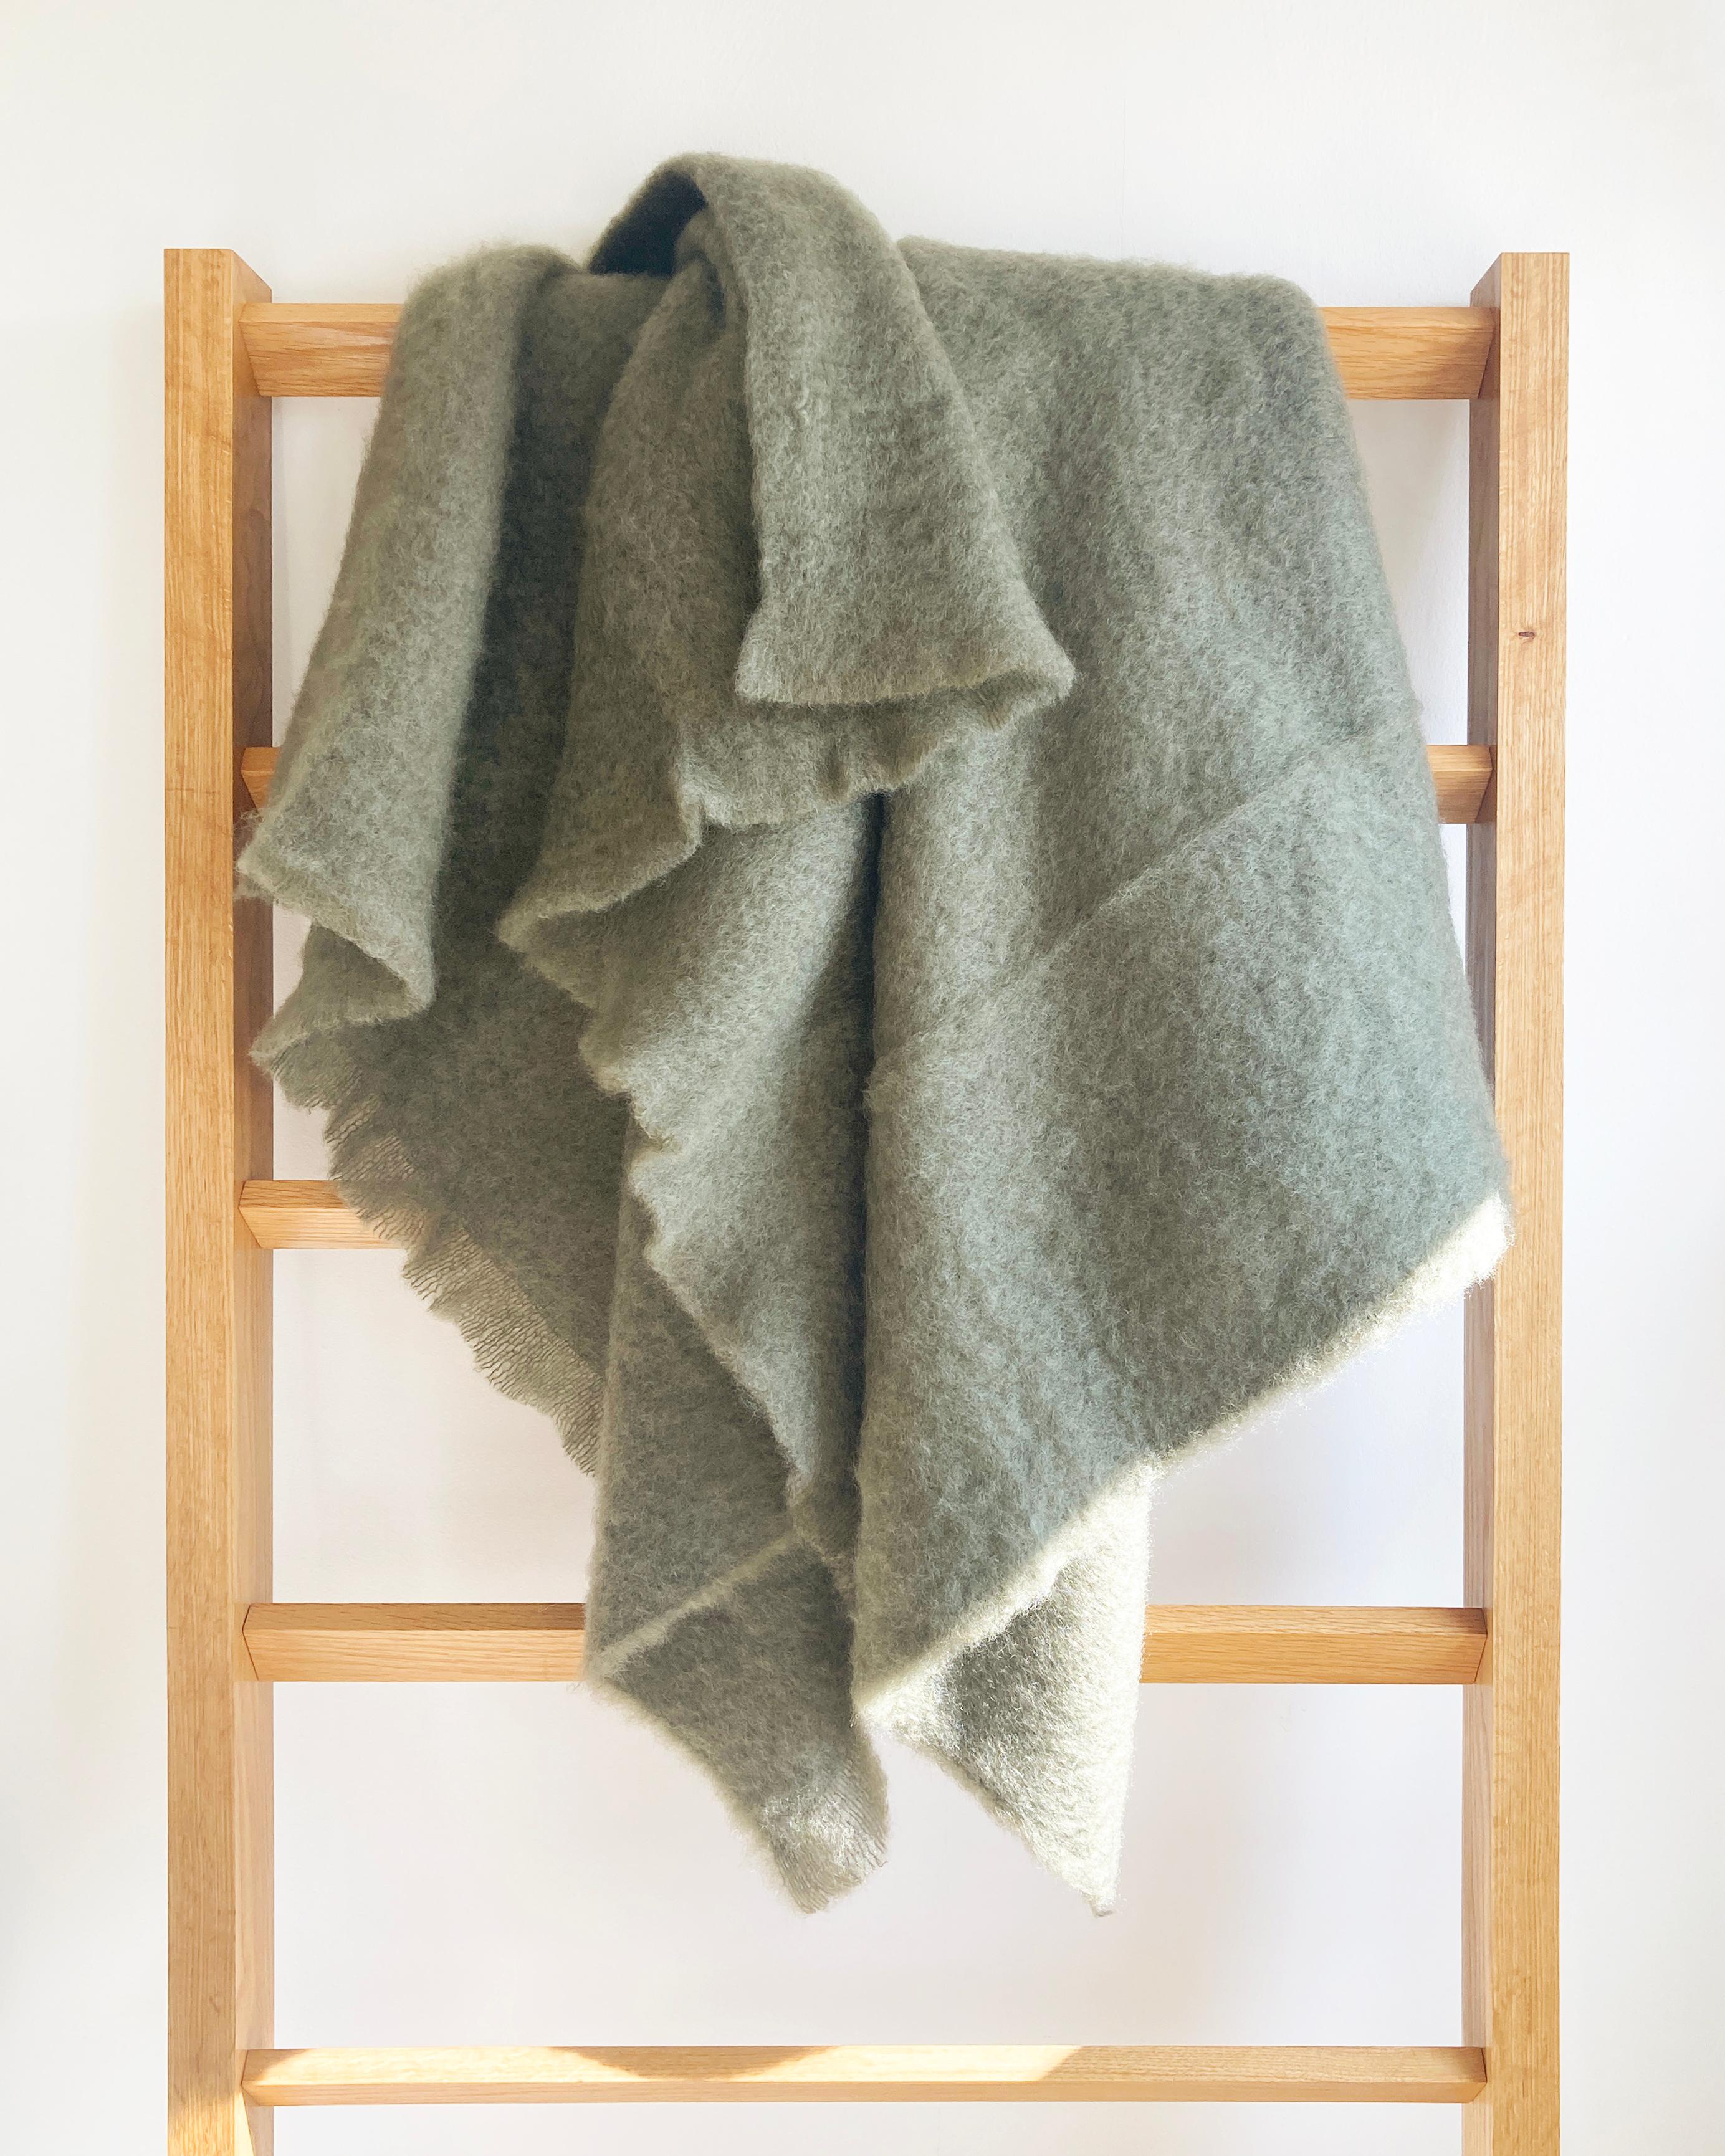 Kuschelige Bettdecken für Ihr Zuhause.

Mohair-Decken halten Sie diesen Winter kuschelig warm. Wenn es kalt wird, wickeln Sie sich in dieses schöne moosgrüne Mohairtuch ein und machen Sie es sich gemütlich. Diese dezente grüne Farbe erhellt den Raum